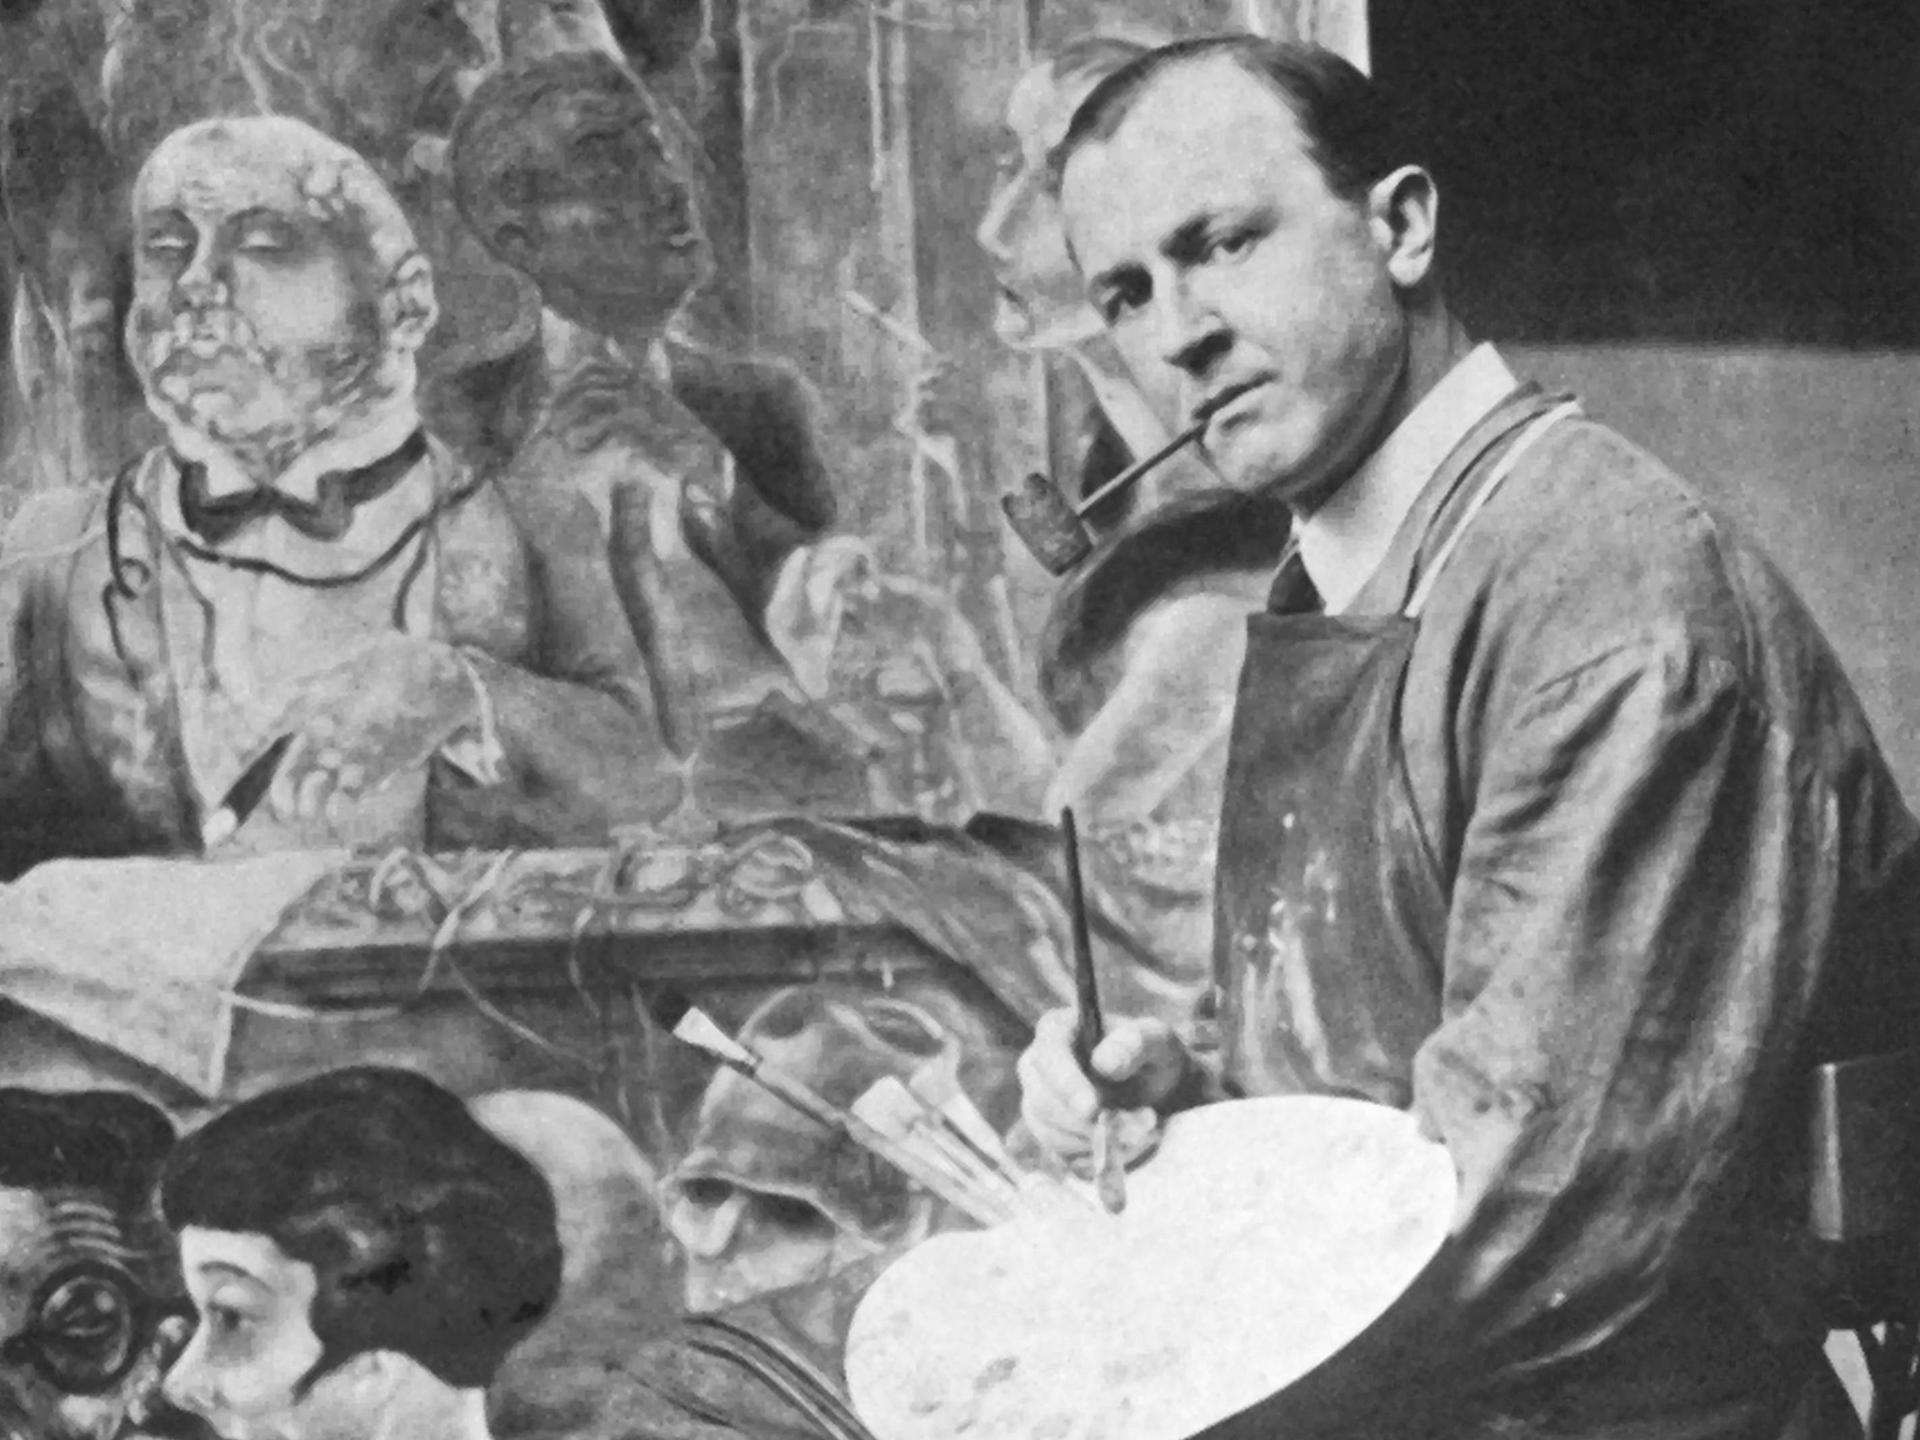 Der deutsche Künstler George Grosz (1893 - 1959) in seinem Atelier vor einem Gemälde. Er war ein prominentes Mitglied der Berliner Dada-Gruppe und der Neuen Sachlichkeit, bekannt vor allem für seine bissigen Karikaturen des Berliner Lebens in den 1920er Jahren.